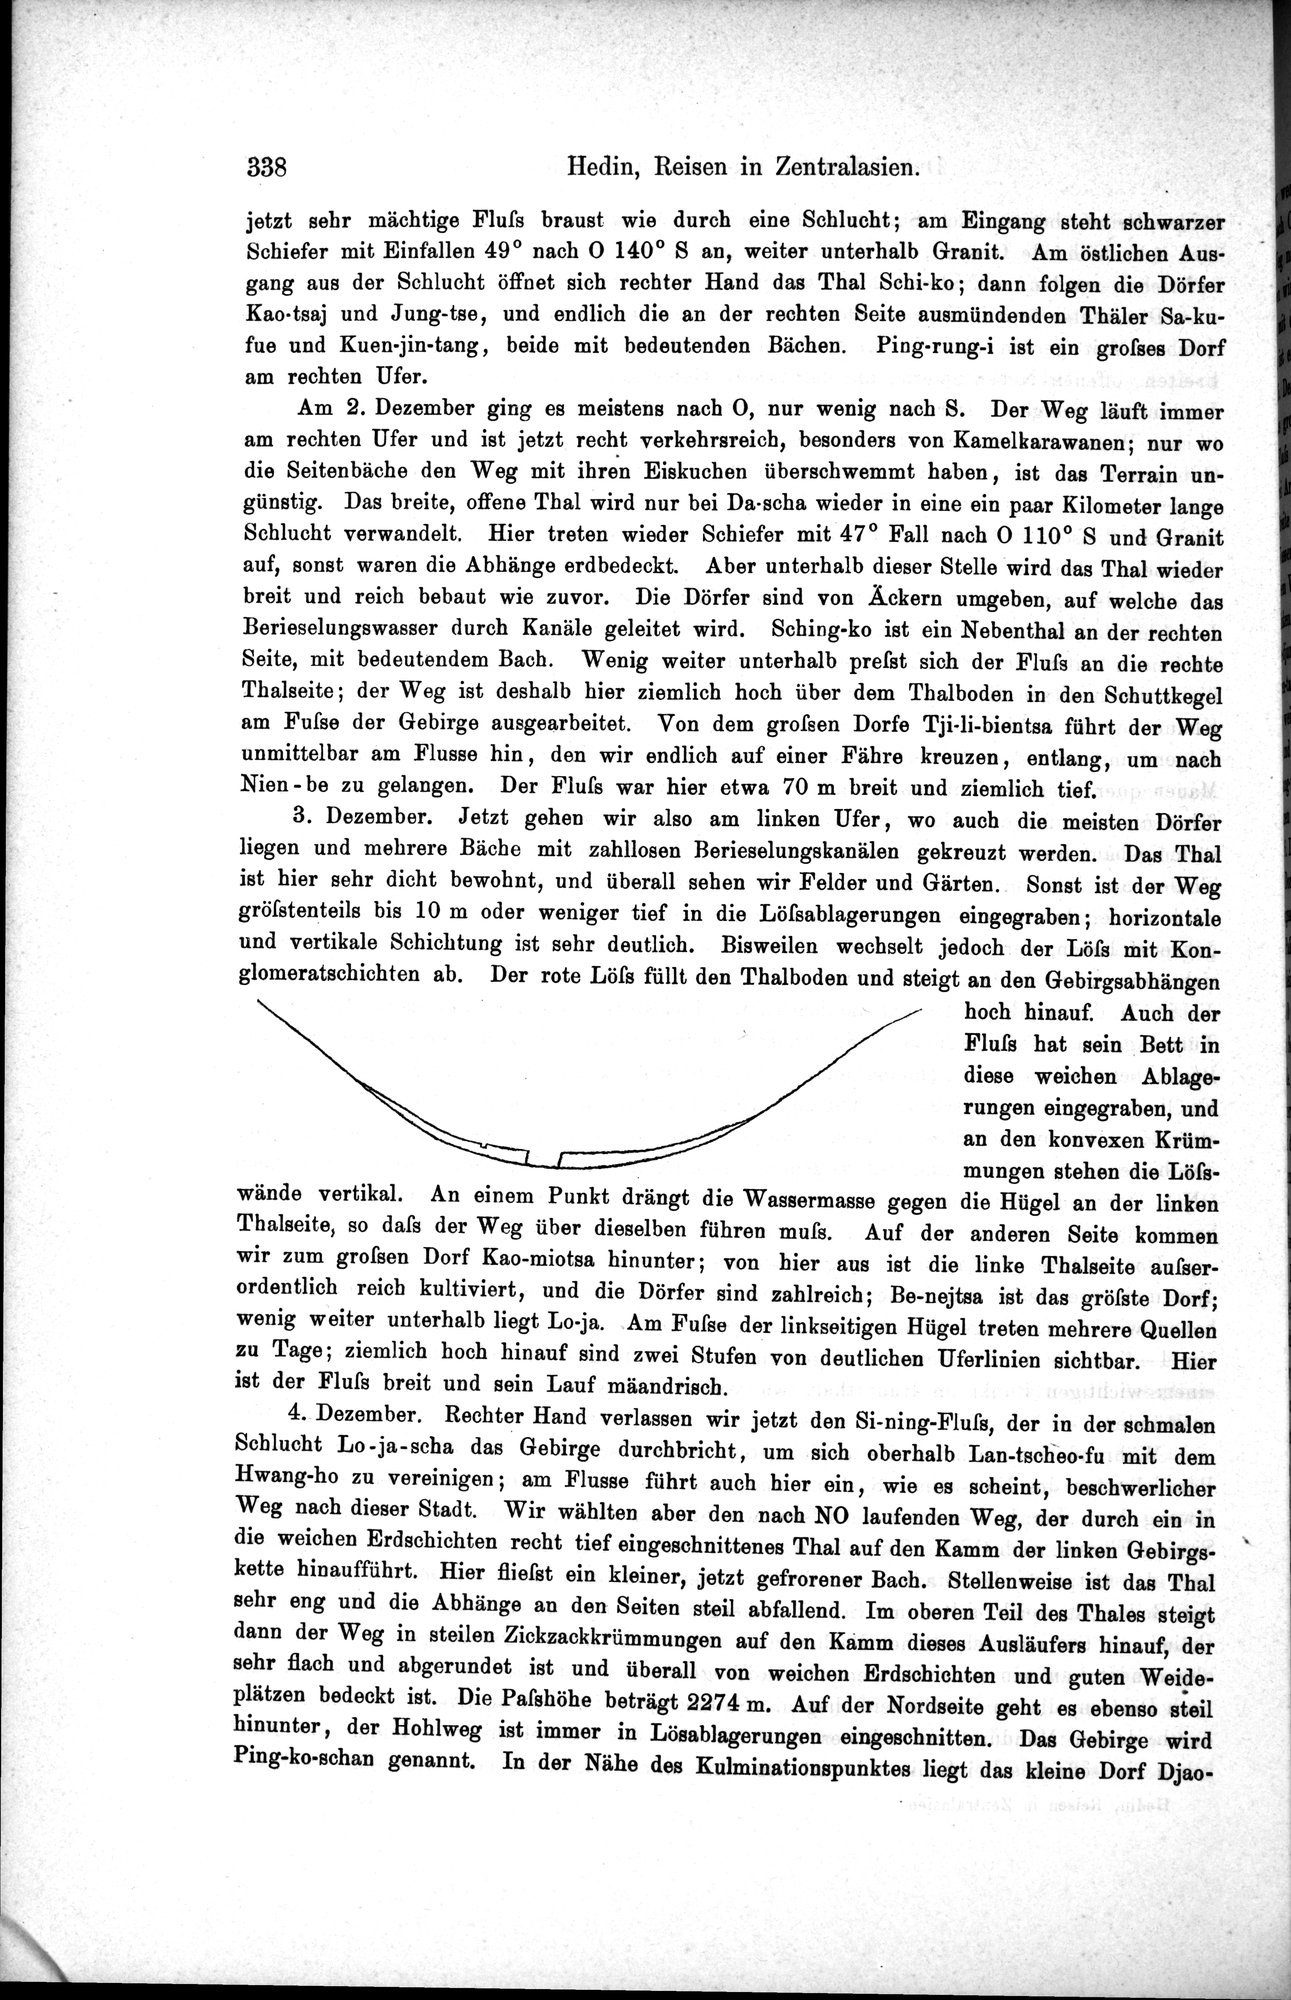 Die Geographische-Wissenschaftlichen Ergebnisse meiner Reisen in Zentralasien, 1894-1897 : vol.1 / Page 350 (Grayscale High Resolution Image)